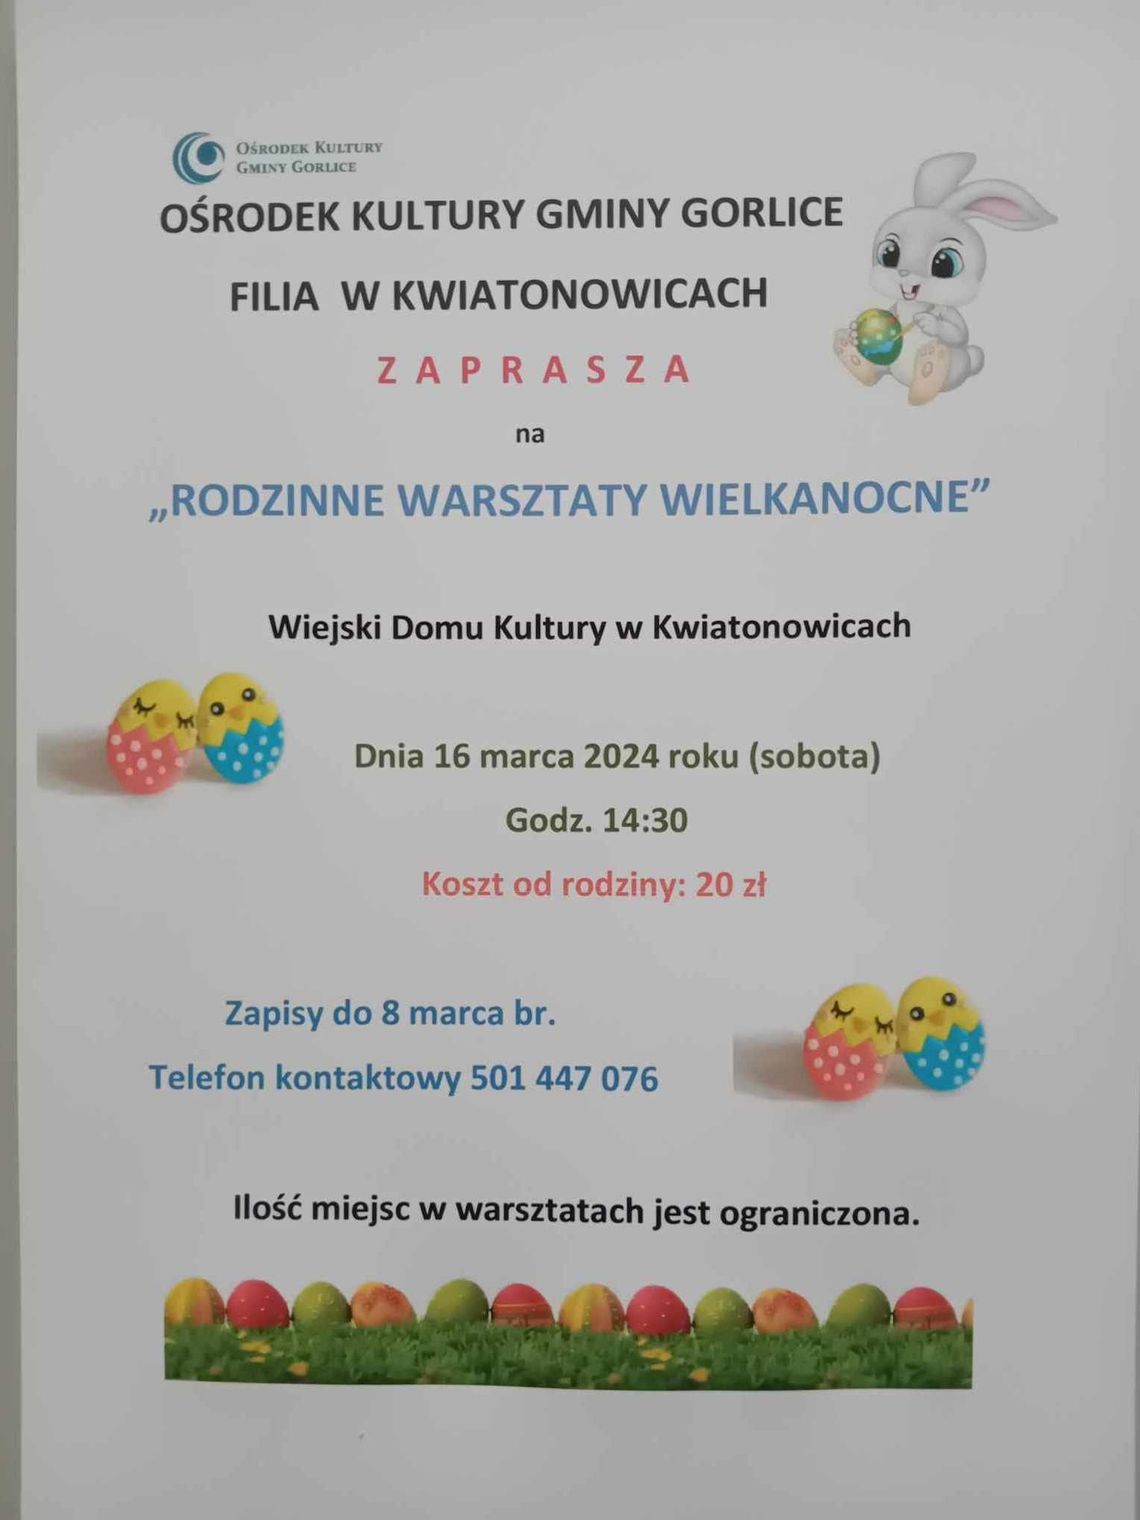 Rodzinne warsztaty wielkanocne w Kwiatonowicach | halogorlice.info